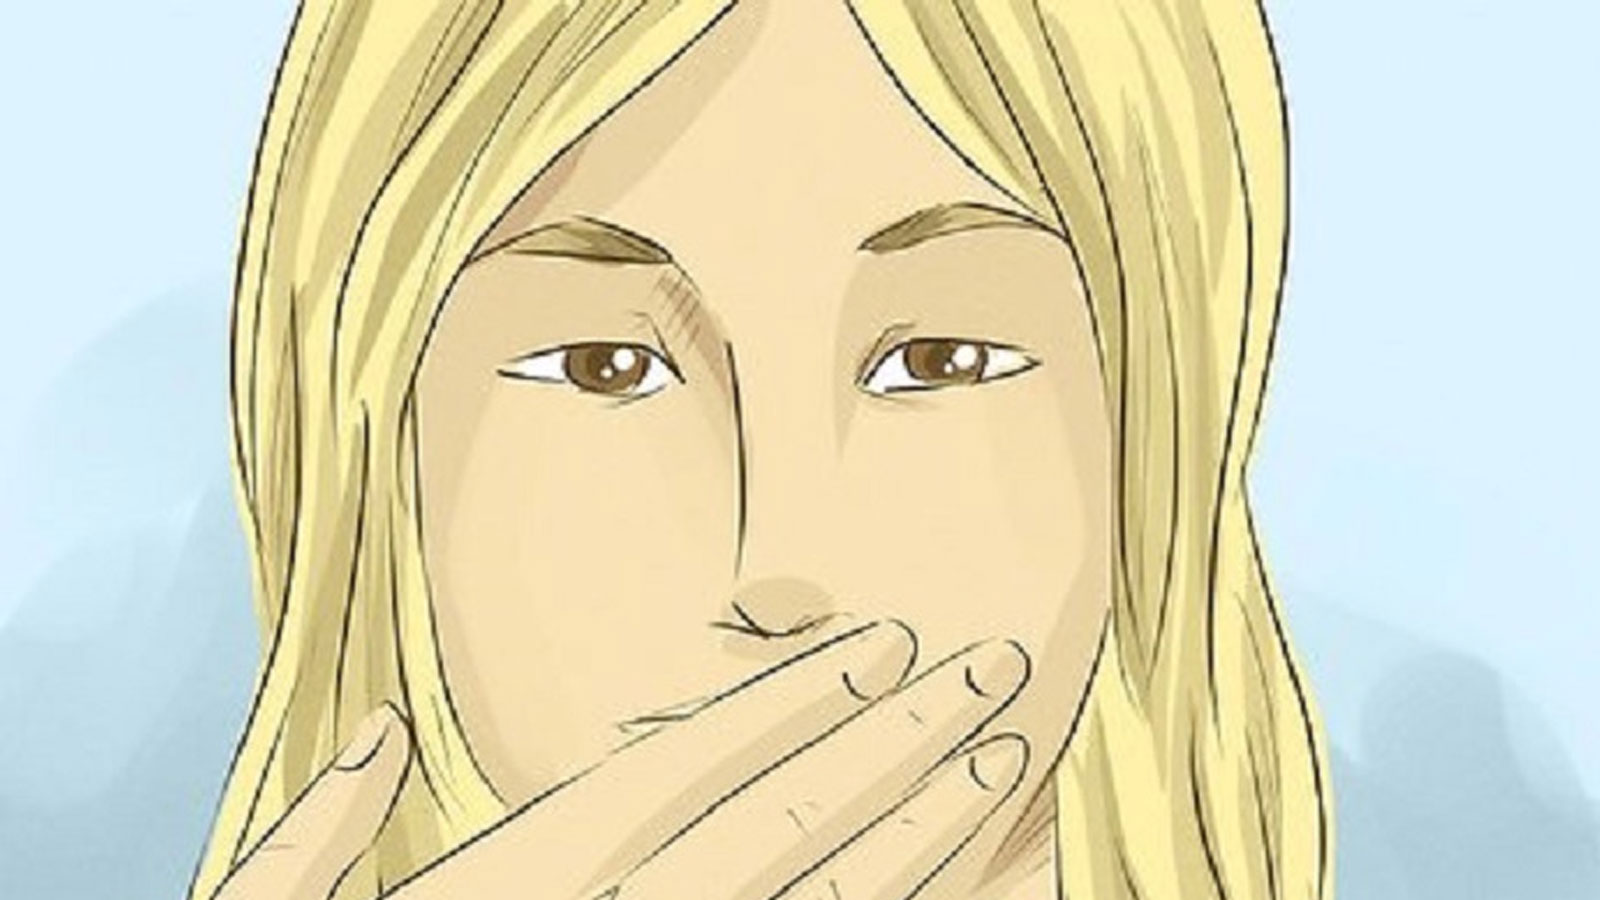 Καλύτερα να μασάς παρά να μιλάς... 5 Πράγματα που Θα Πρέπει να Μάθετε να Κρατάτε το Στόμα σας Κλειστό